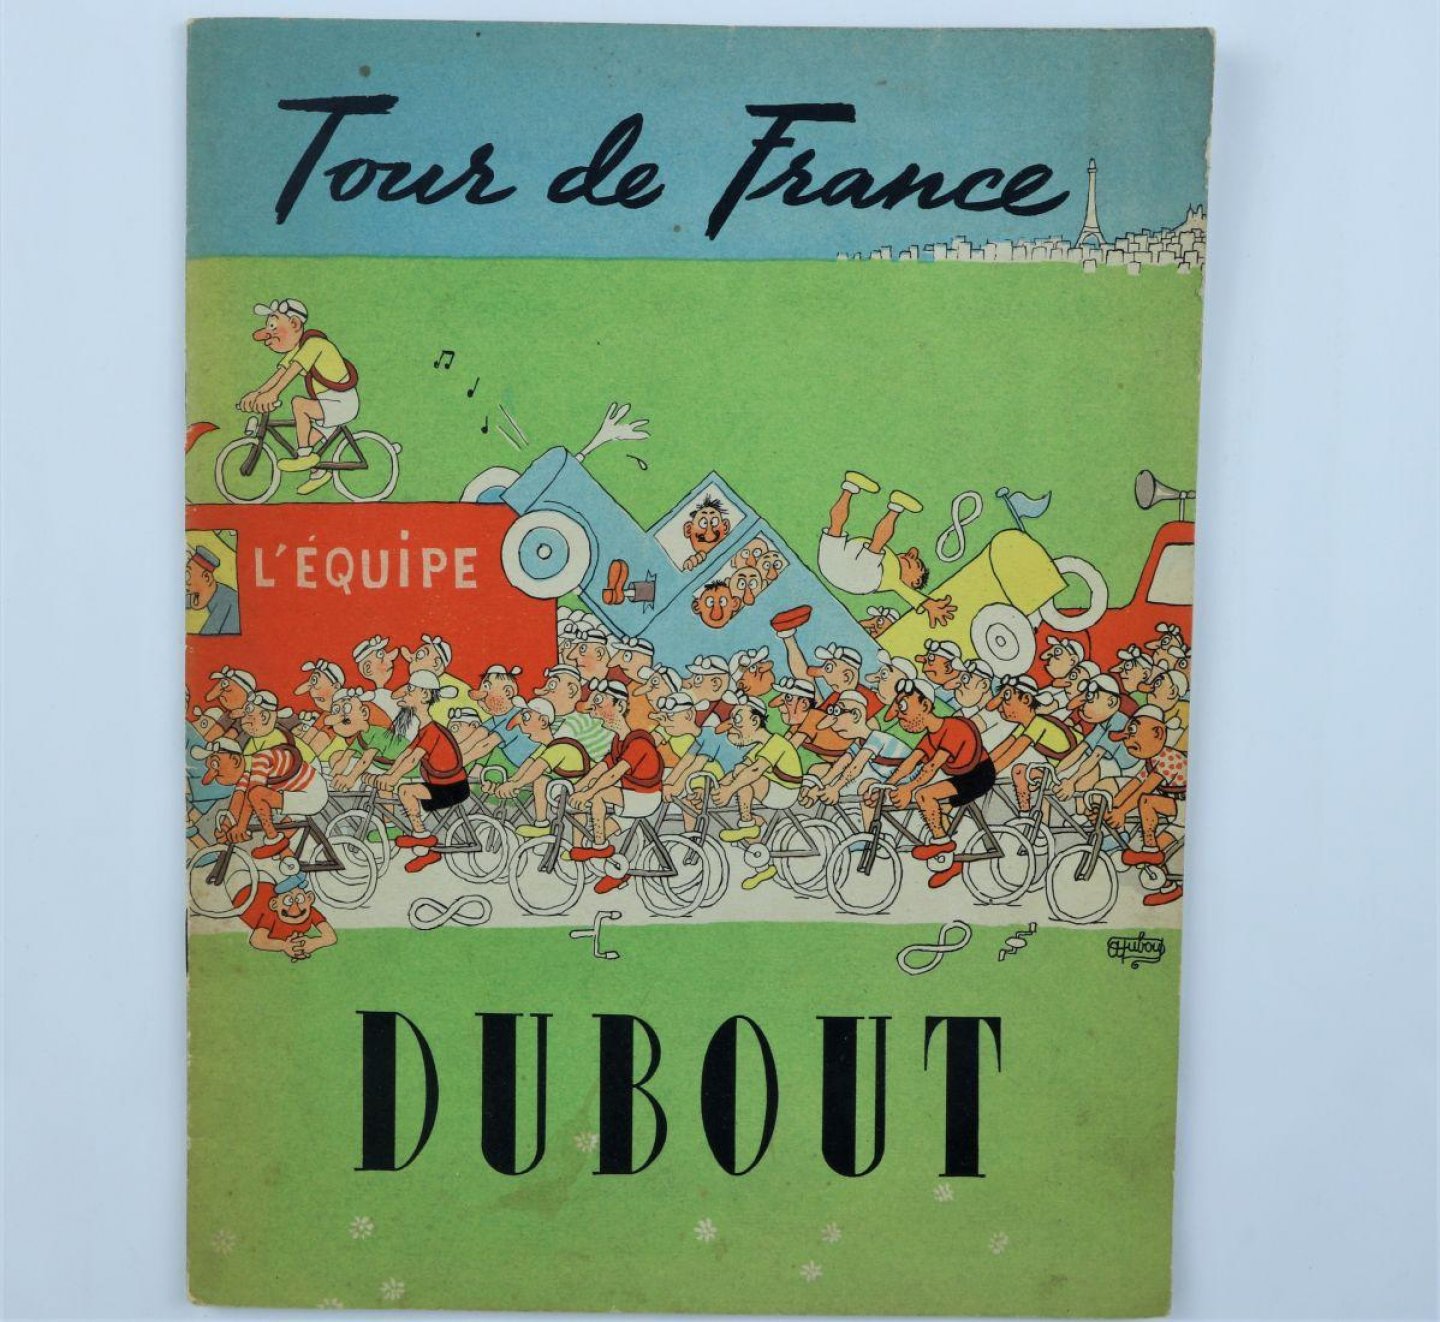 Dubout, Albert - Tour de France (3 foto's)